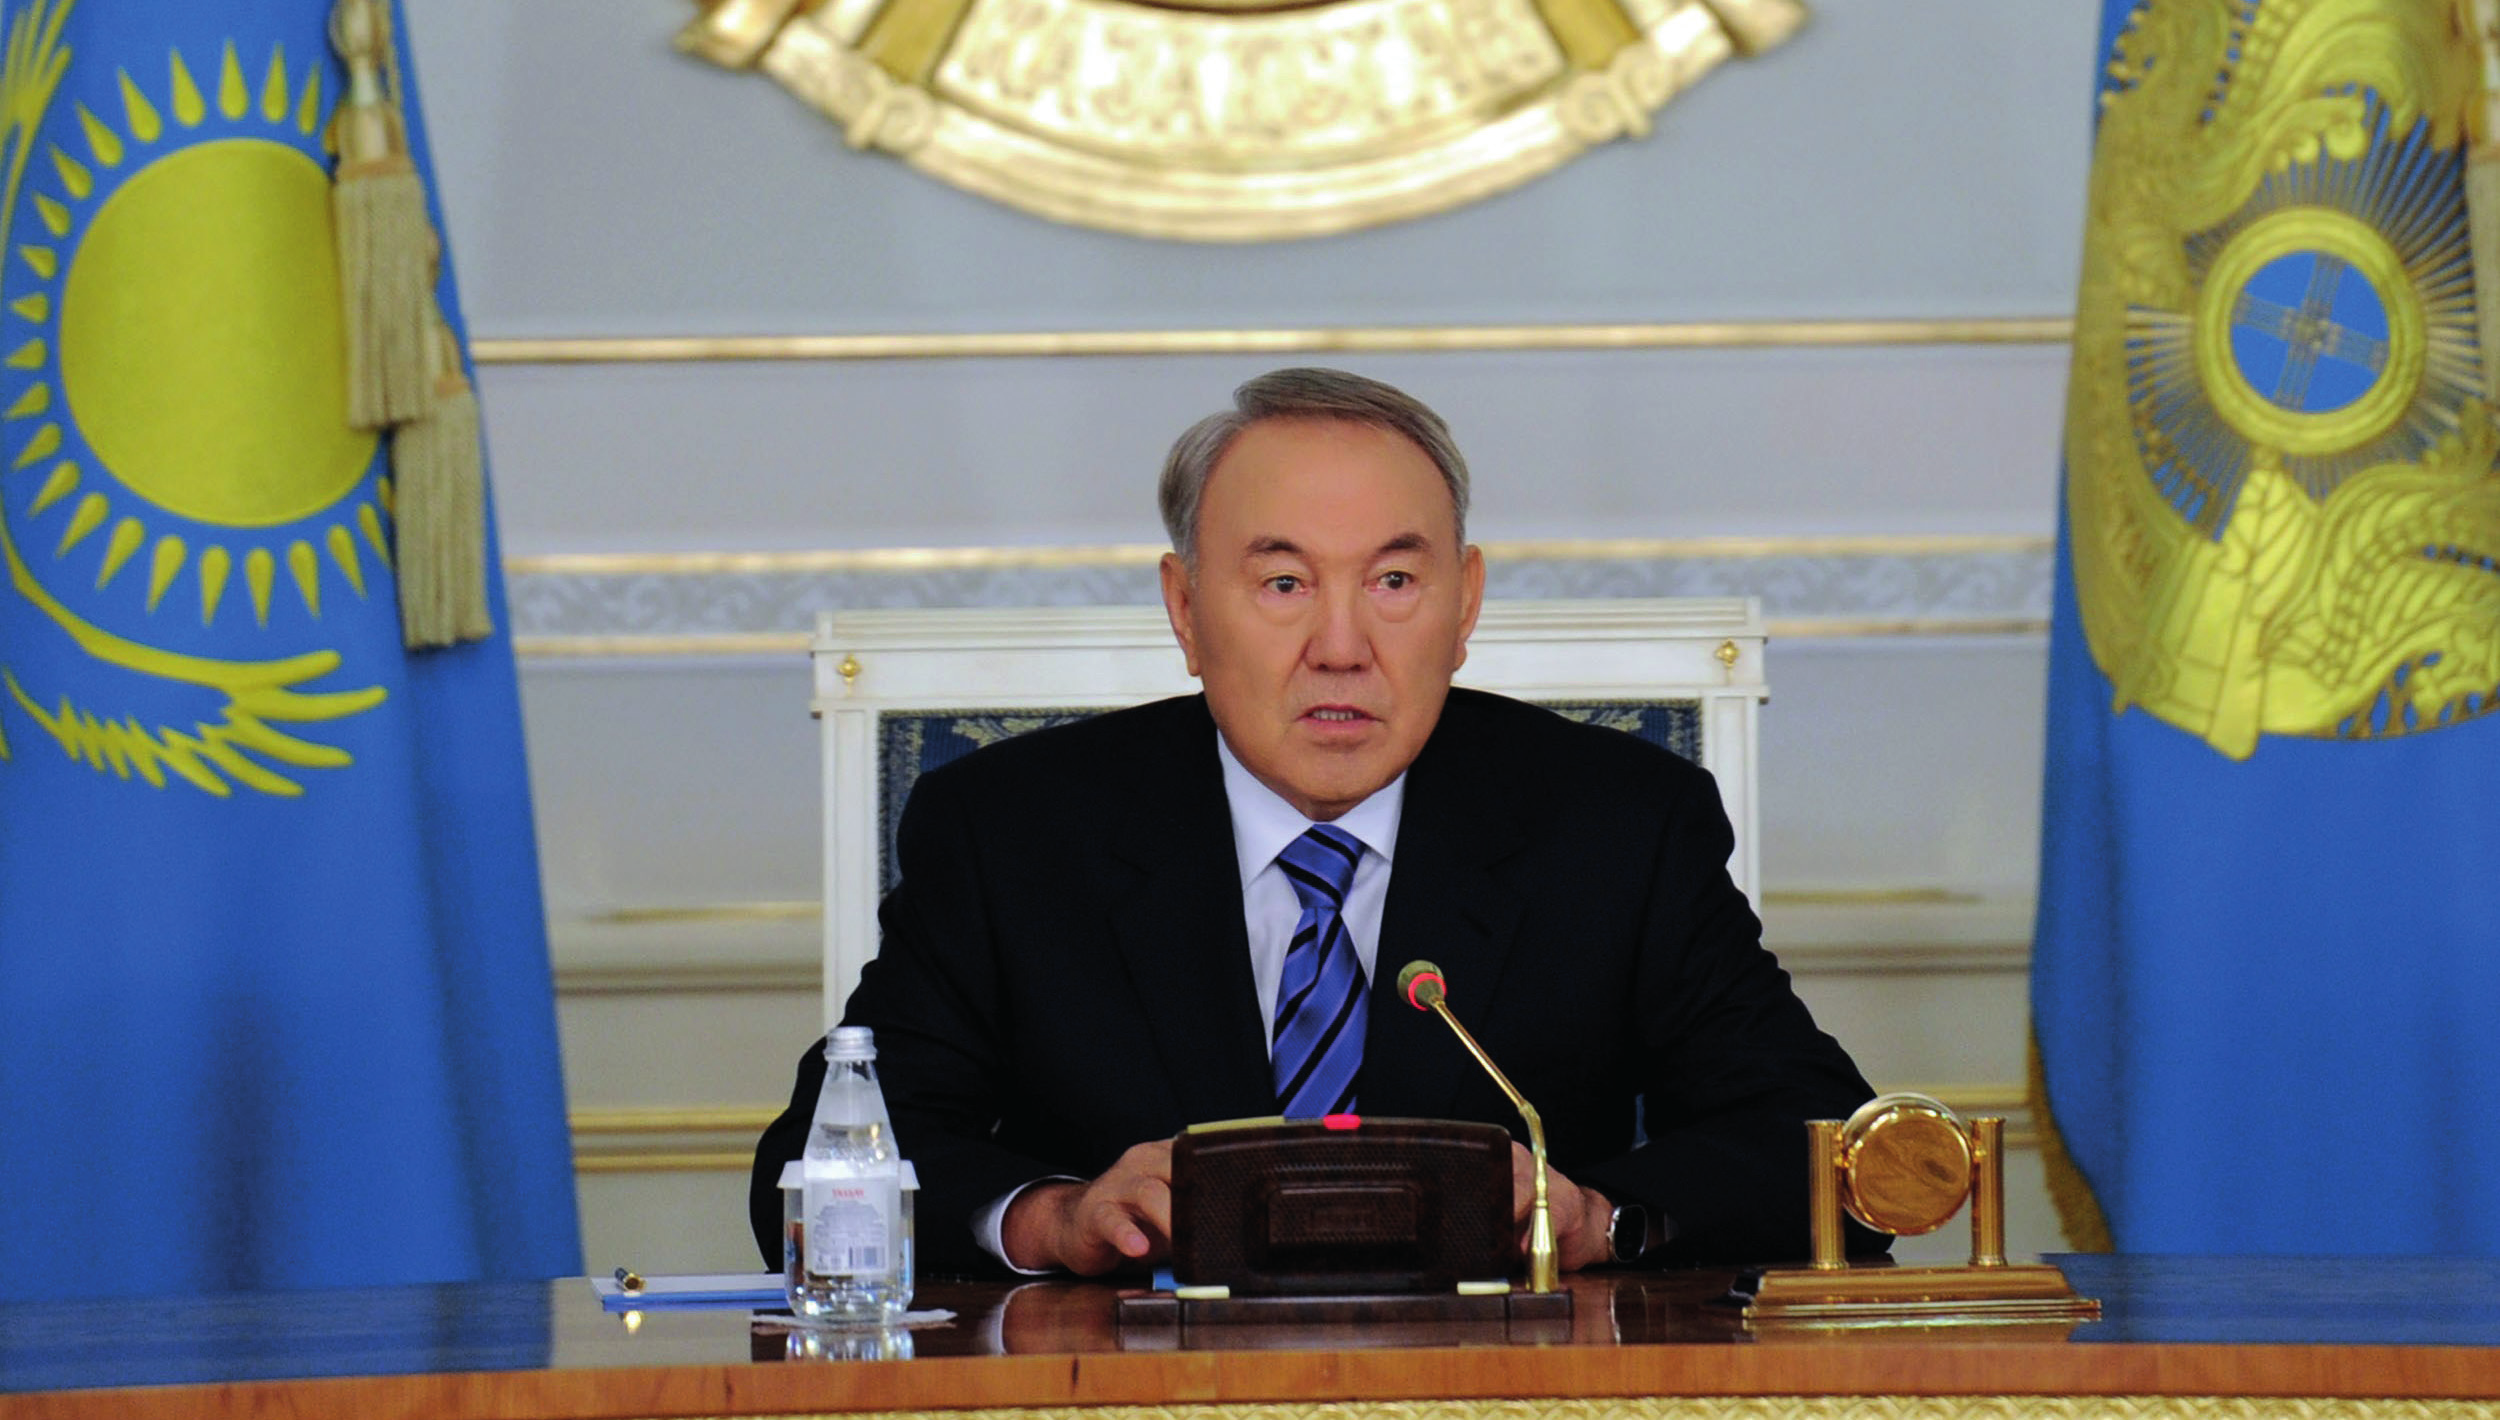 KAZAKİSTAN DA YETKİ PAYLAŞIMI SÜRECİ Geçen yılın sonlarından itibaren Kazakistan da Devlet Başkanı, Hükümet ve Parlamento Başkanları yetkilerinin sistemli paylaşımı süreci başladı.